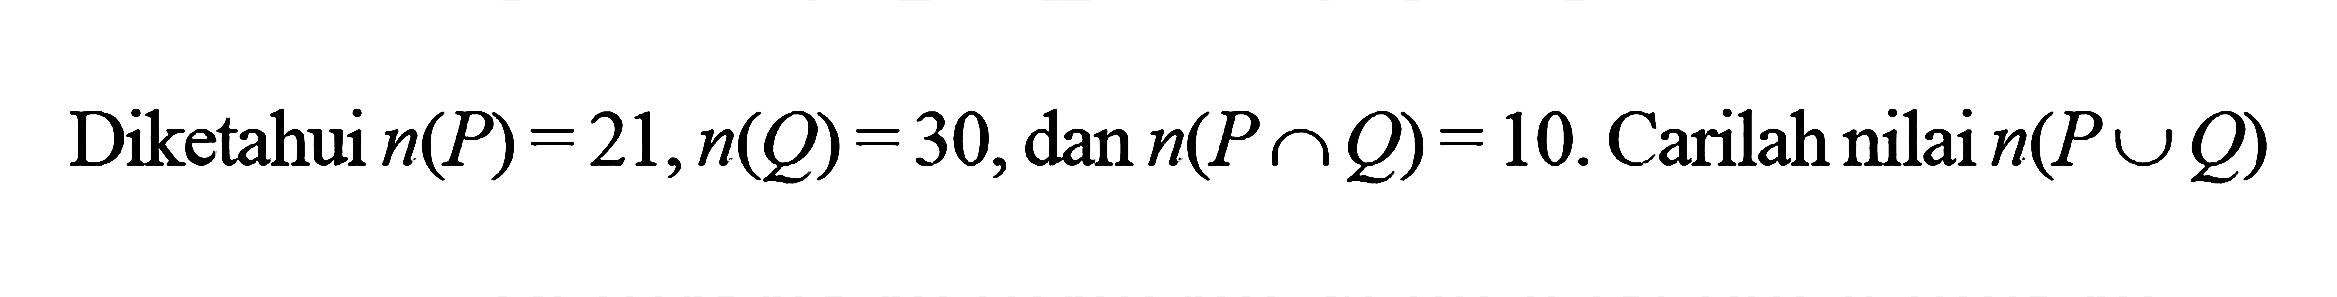 Diketahui n(P) = 21, n(Q) = 30, dan n(P n Q) = 10. Carilan nilai n(P U Q)